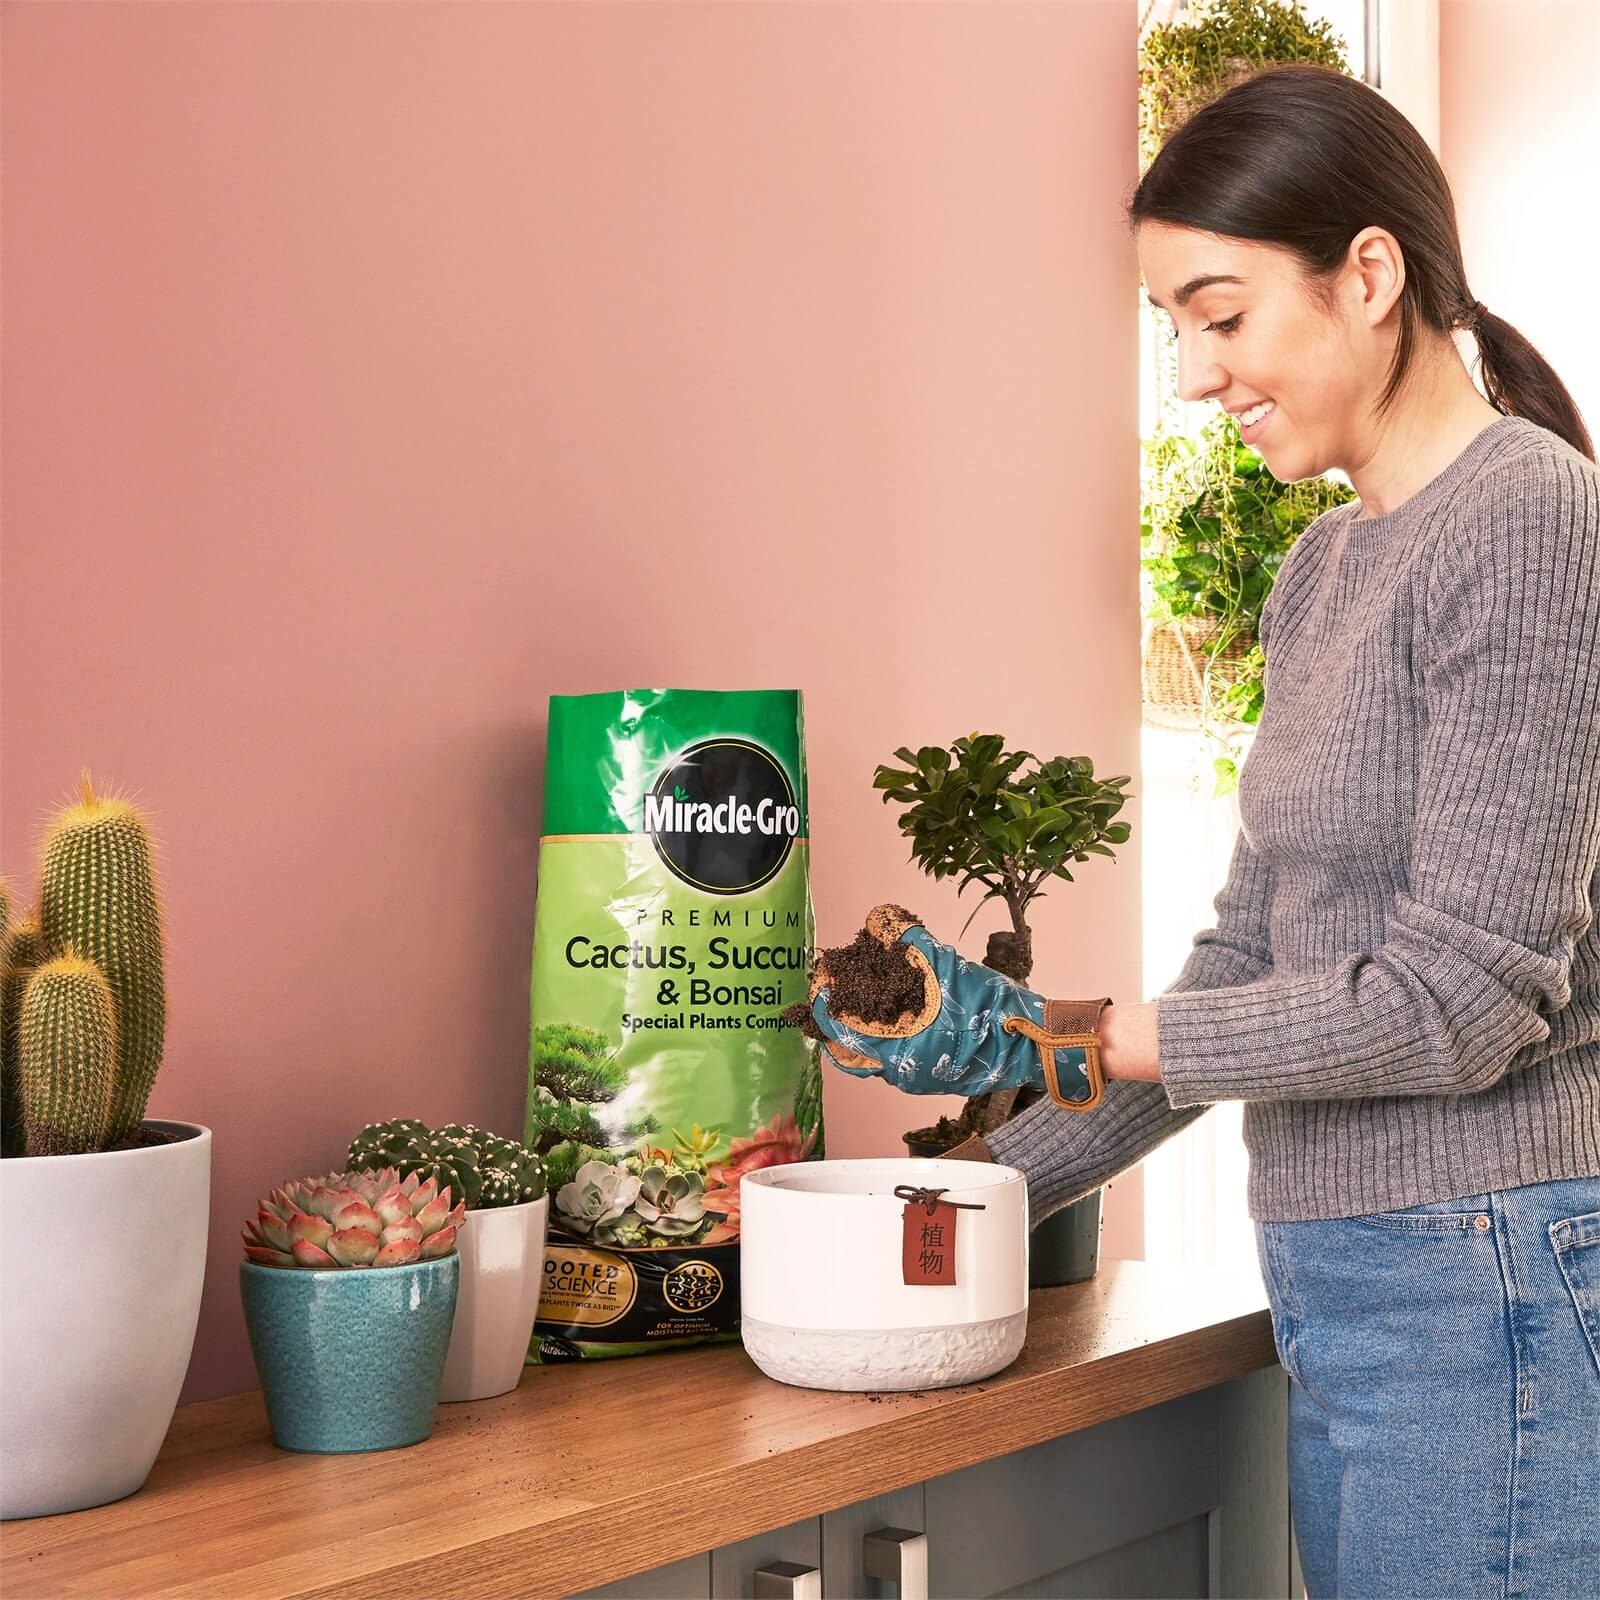 Miracle-Gro Premium Cactus, Succulent & Bonsai Compost - 6L